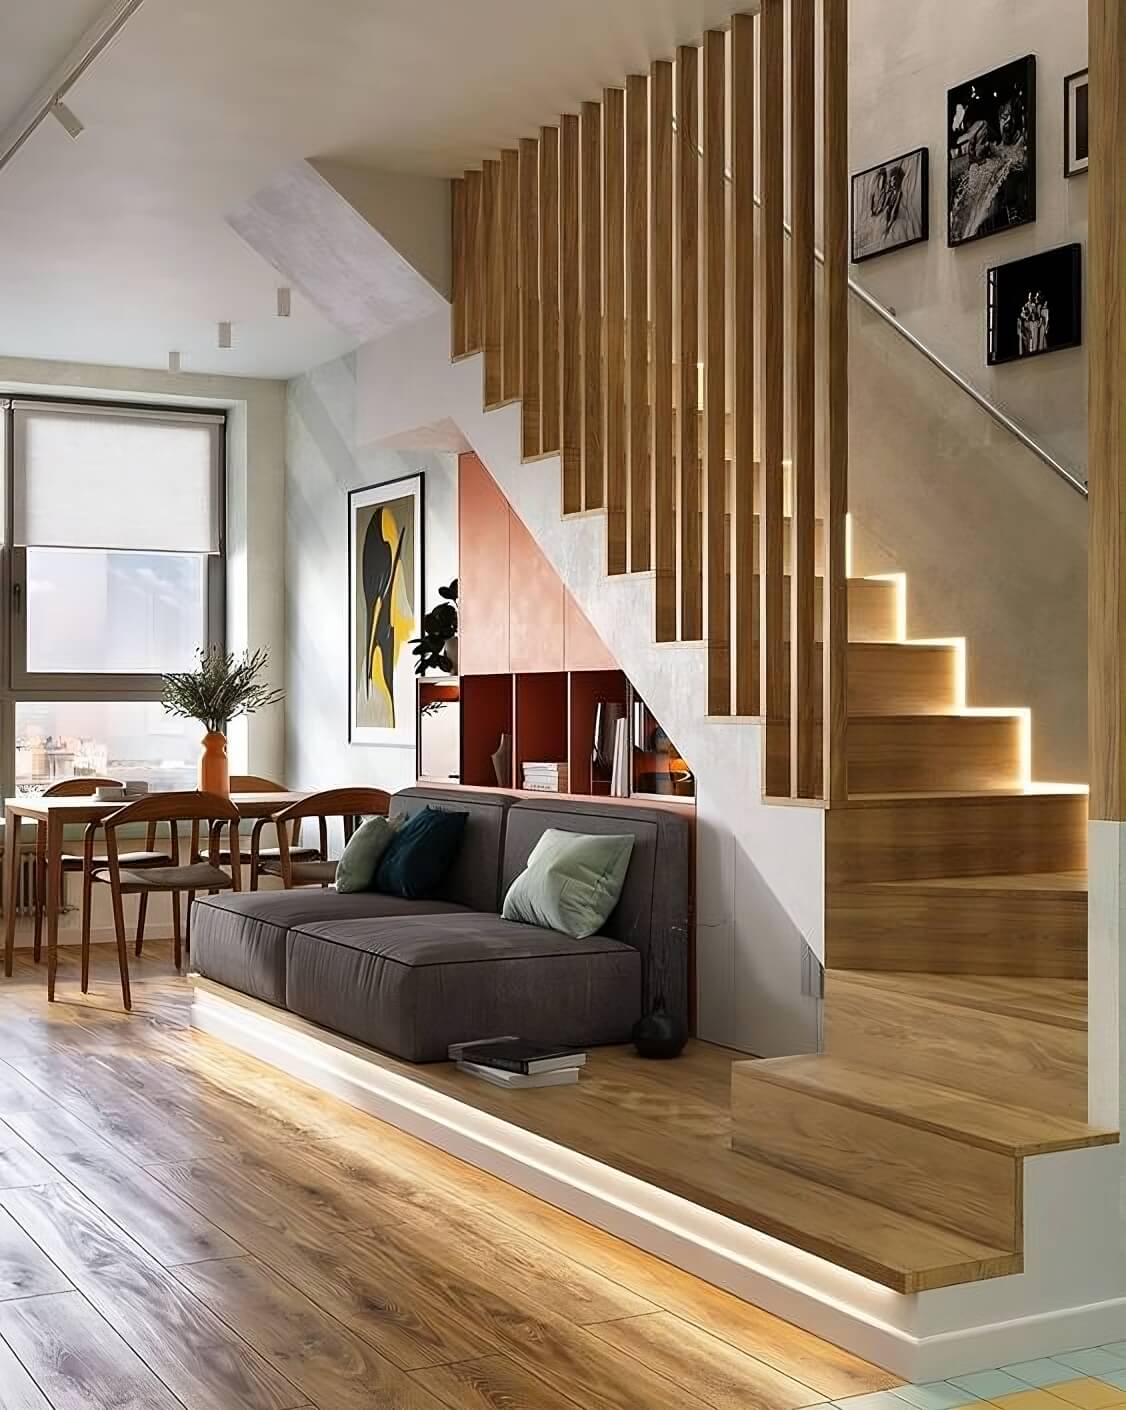 19 mẫu thiết kế cầu thang đẹp cho mọi phong cách nhà ở